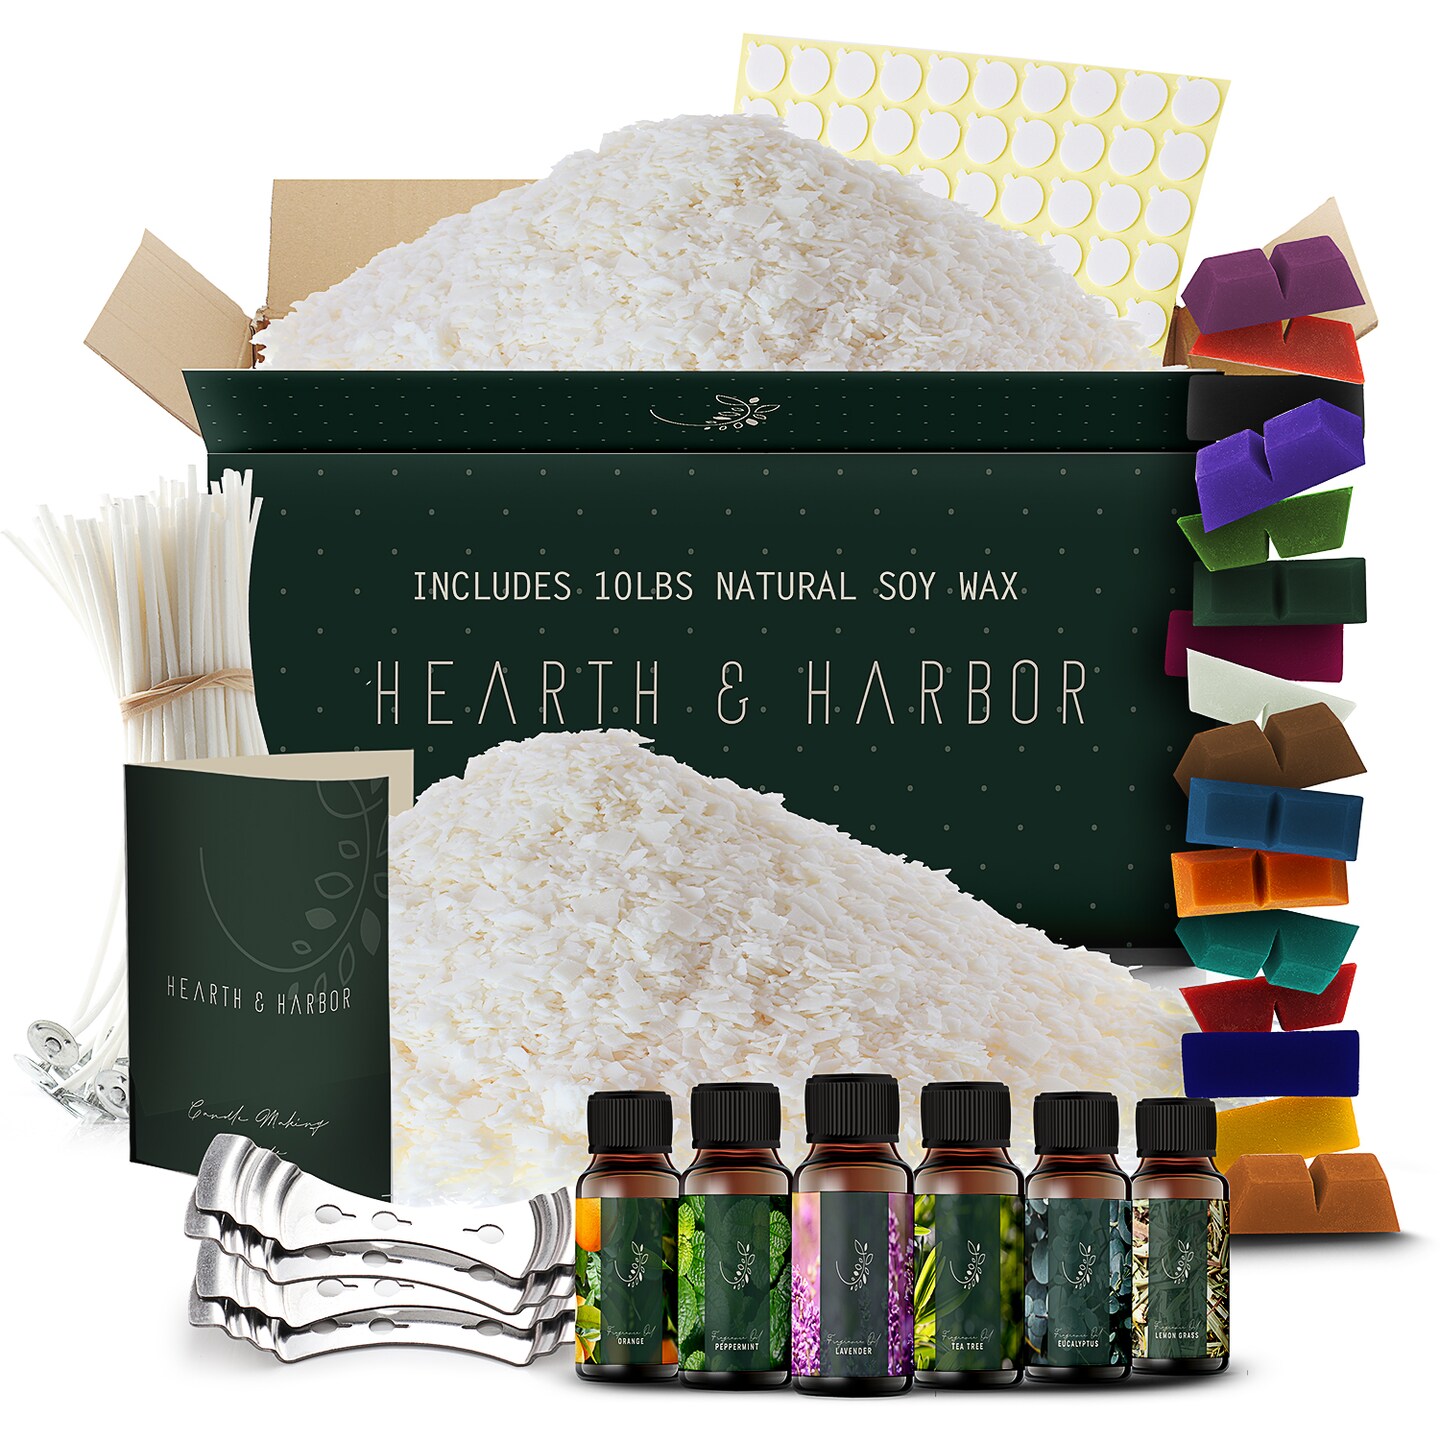 Hearth & Harbor DIY Natural Soy Wax Candle Making Kit